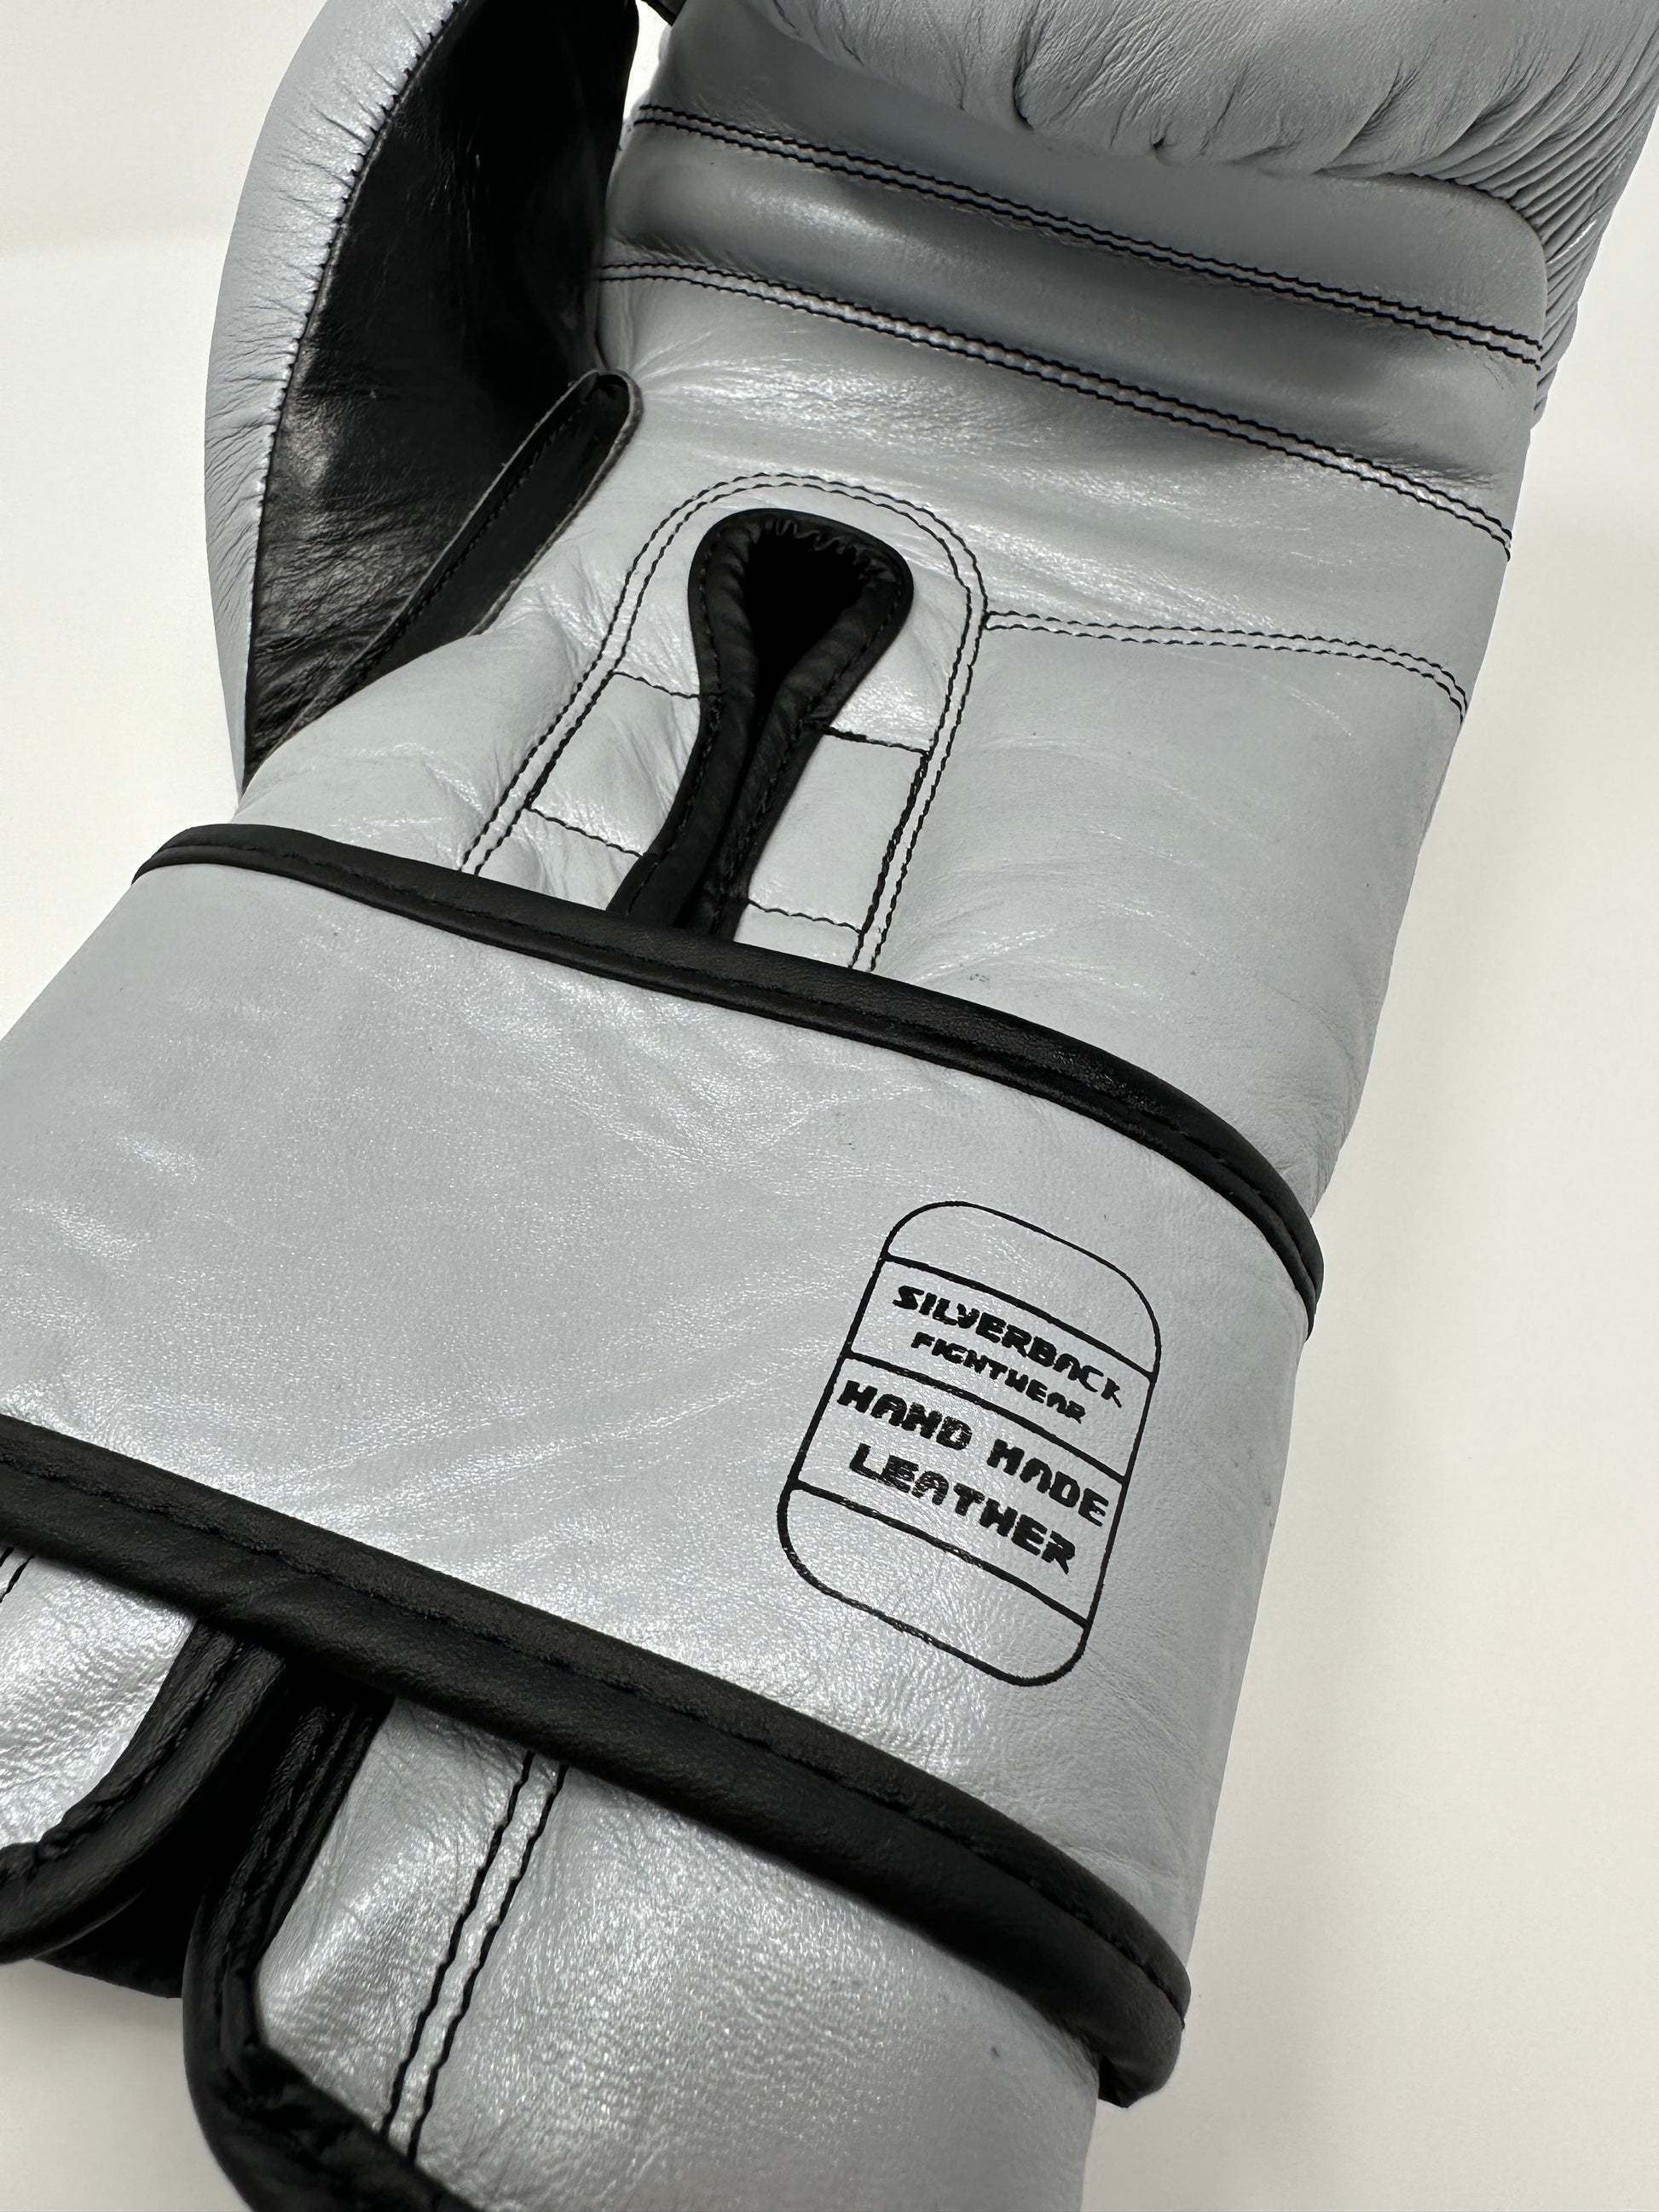 GANTS DE BOXE SILVERBACK - TM-200 - Argent – Silverback Fightwear